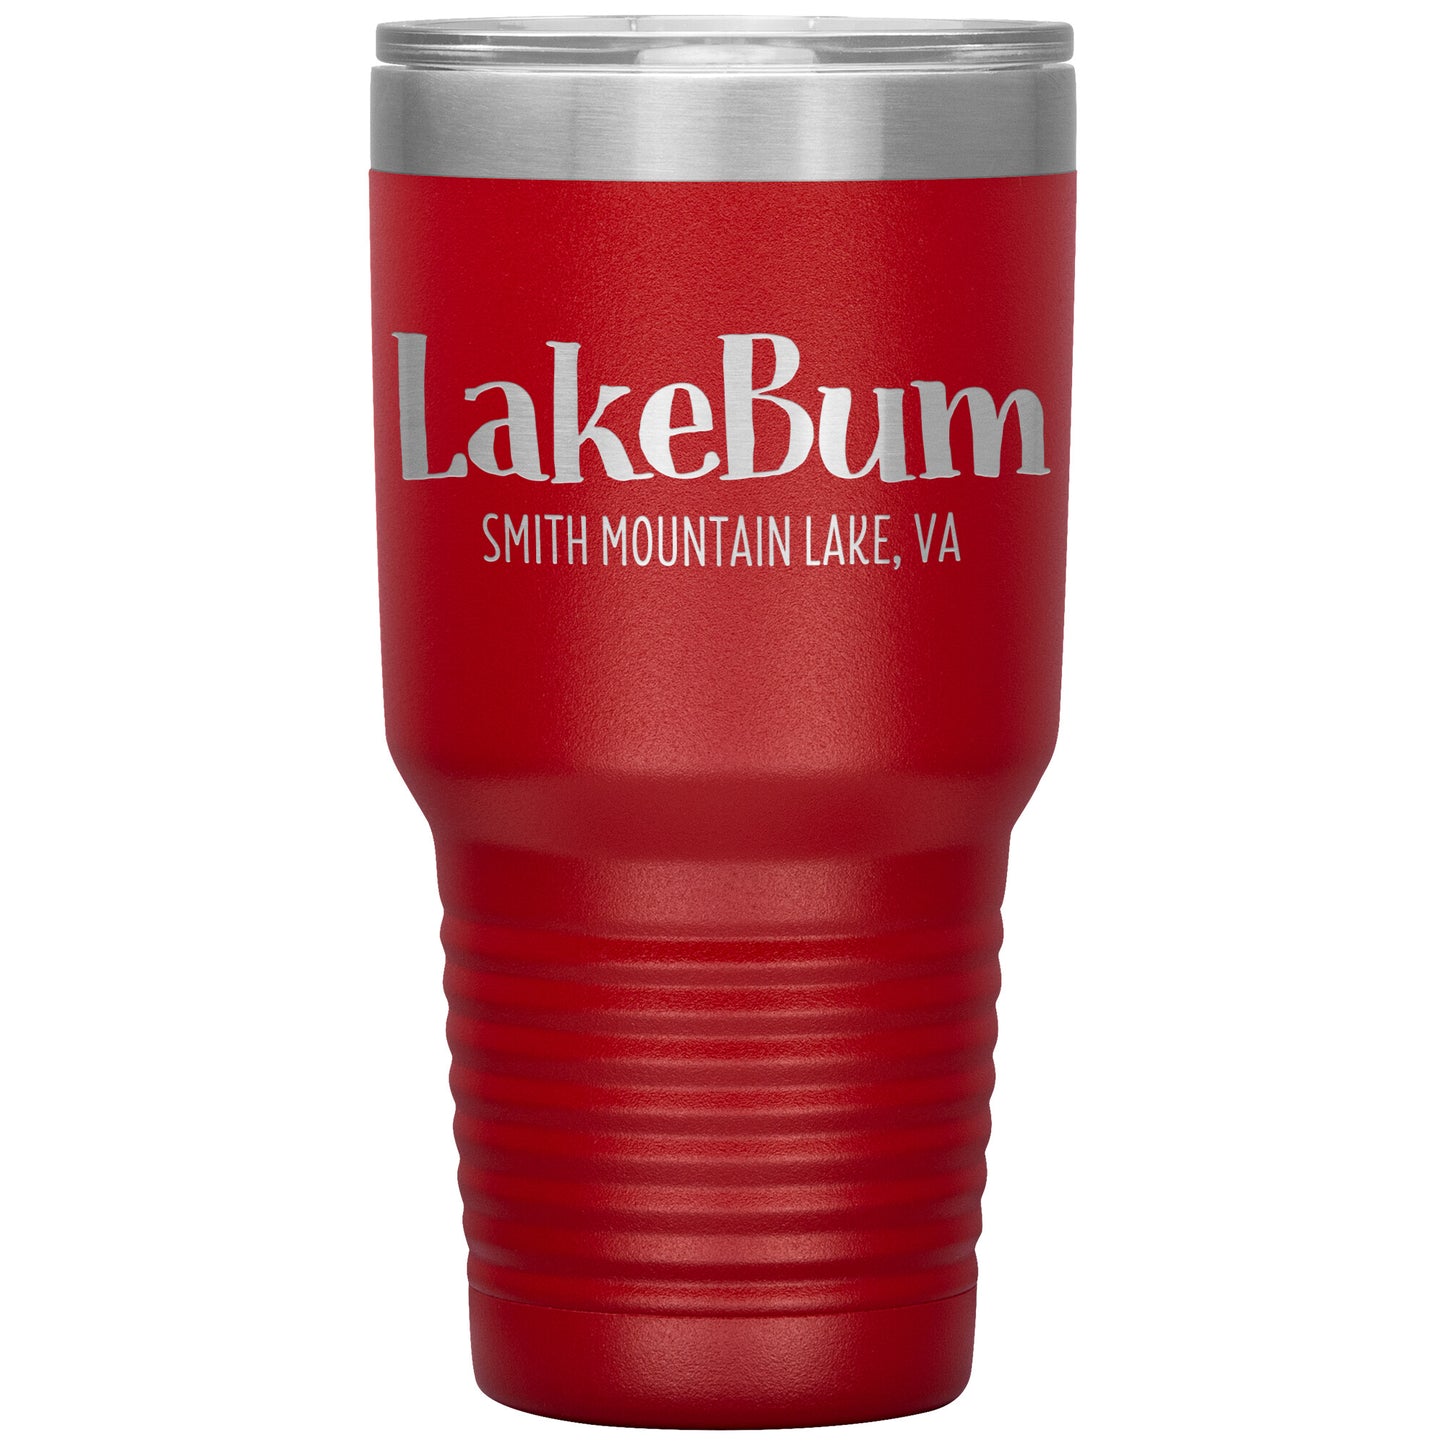 Lake Bum Smith Mountain Lake - Laser Etched Drink Tumbler